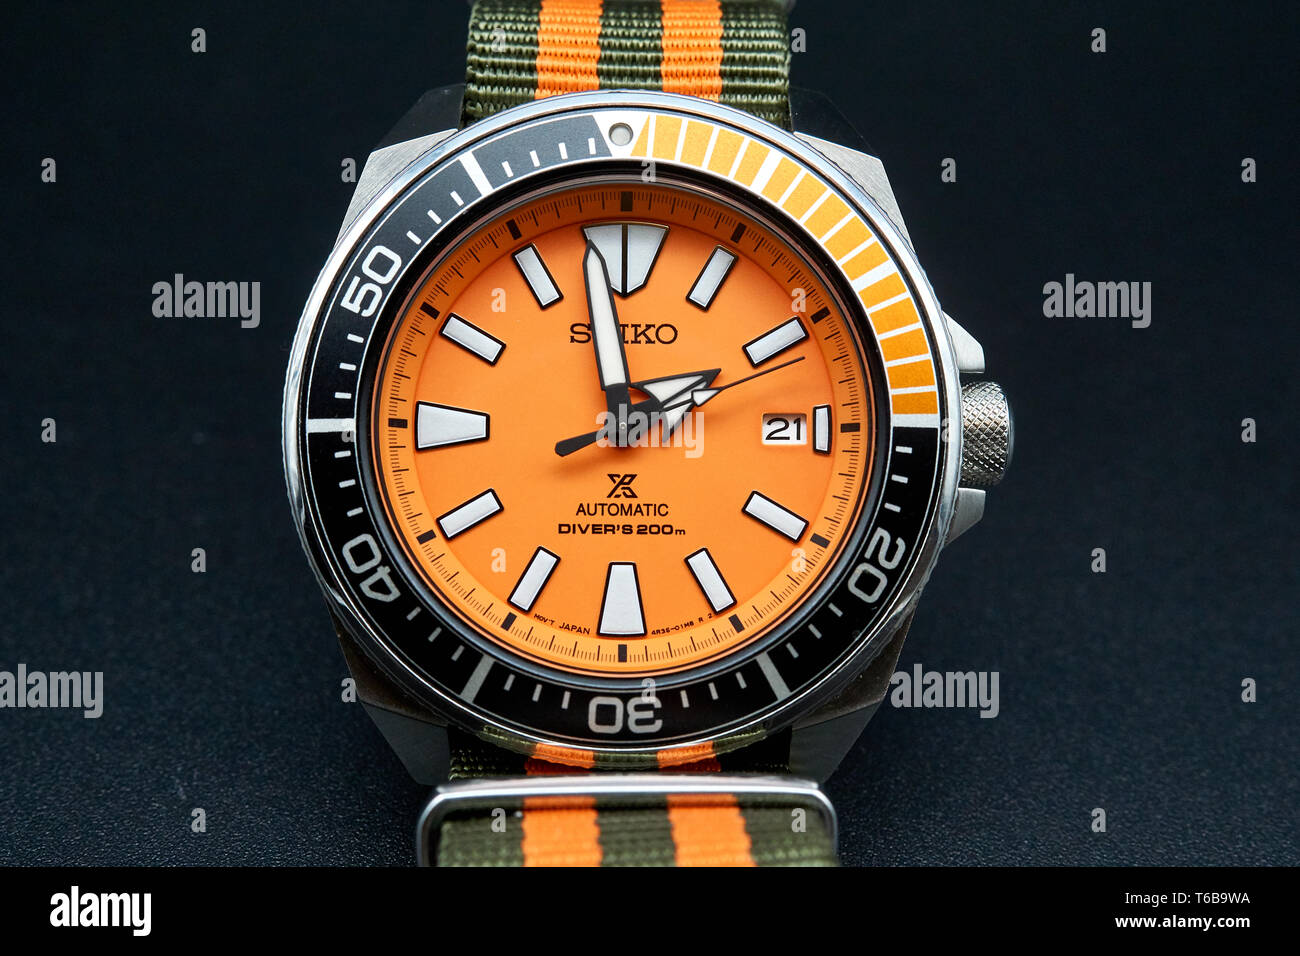 seiko samurai diver watch with orange dial Stock Photo - Alamy